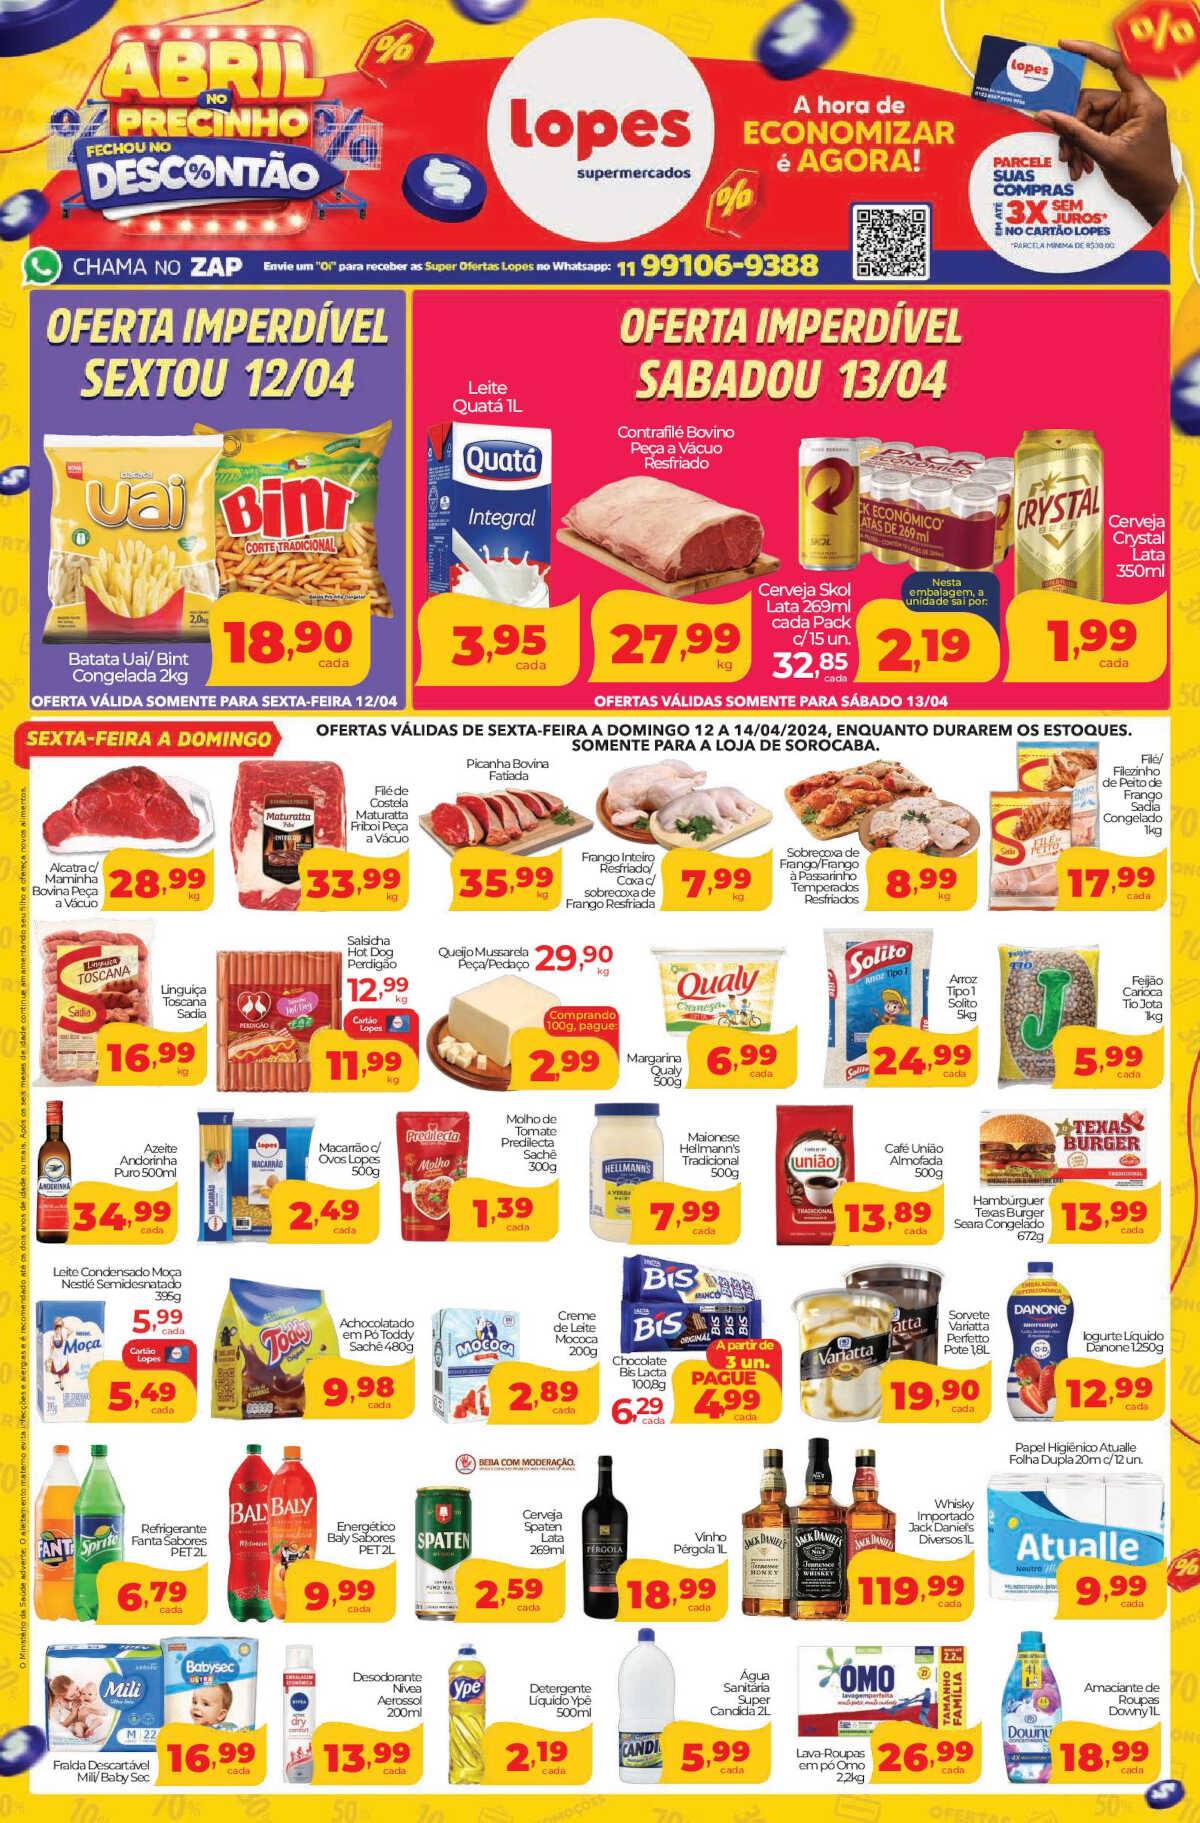 Ofertas Lopes Supermercados até 18/04